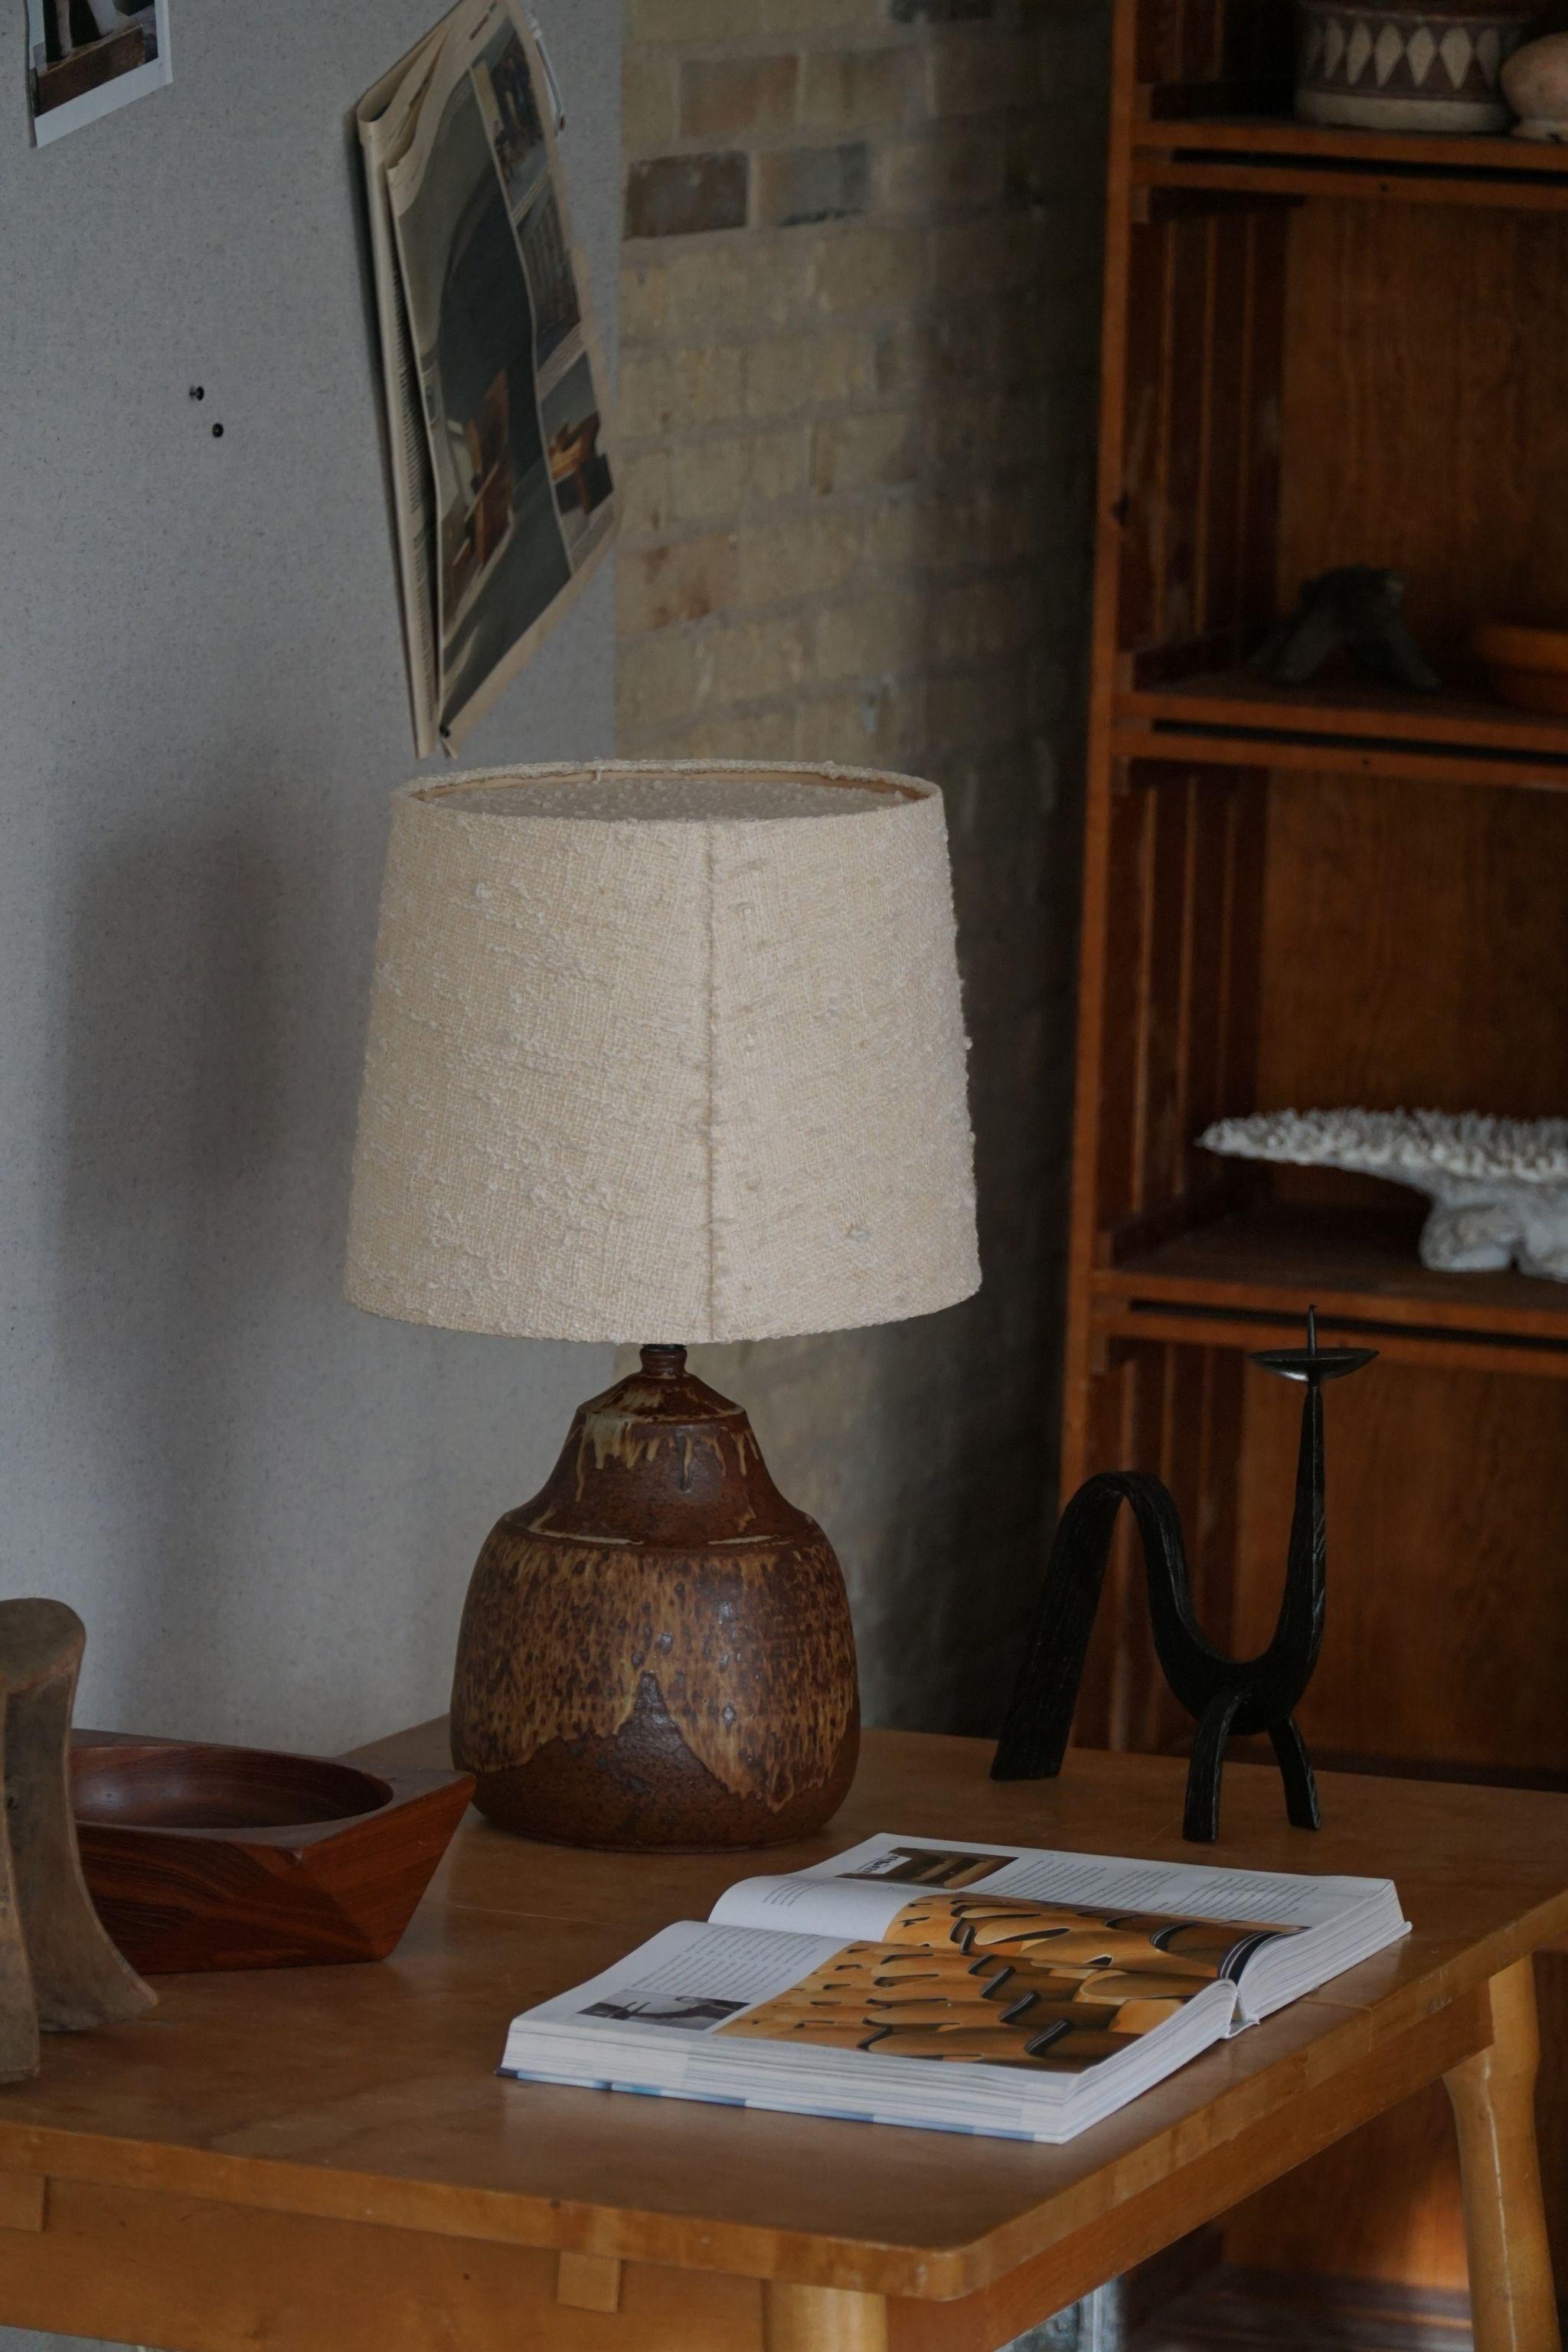 Dänische Moderne organisch geformte Tischlampe aus Steingut. Hergestellt in verschiedenen Erd-/Braunfarben. Hergestellt in den 1970er Jahren von Visby Keramik, unten signiert. 

Dieser Artikel ist in einem tollen Vintage-Zustand. Diese schöne und